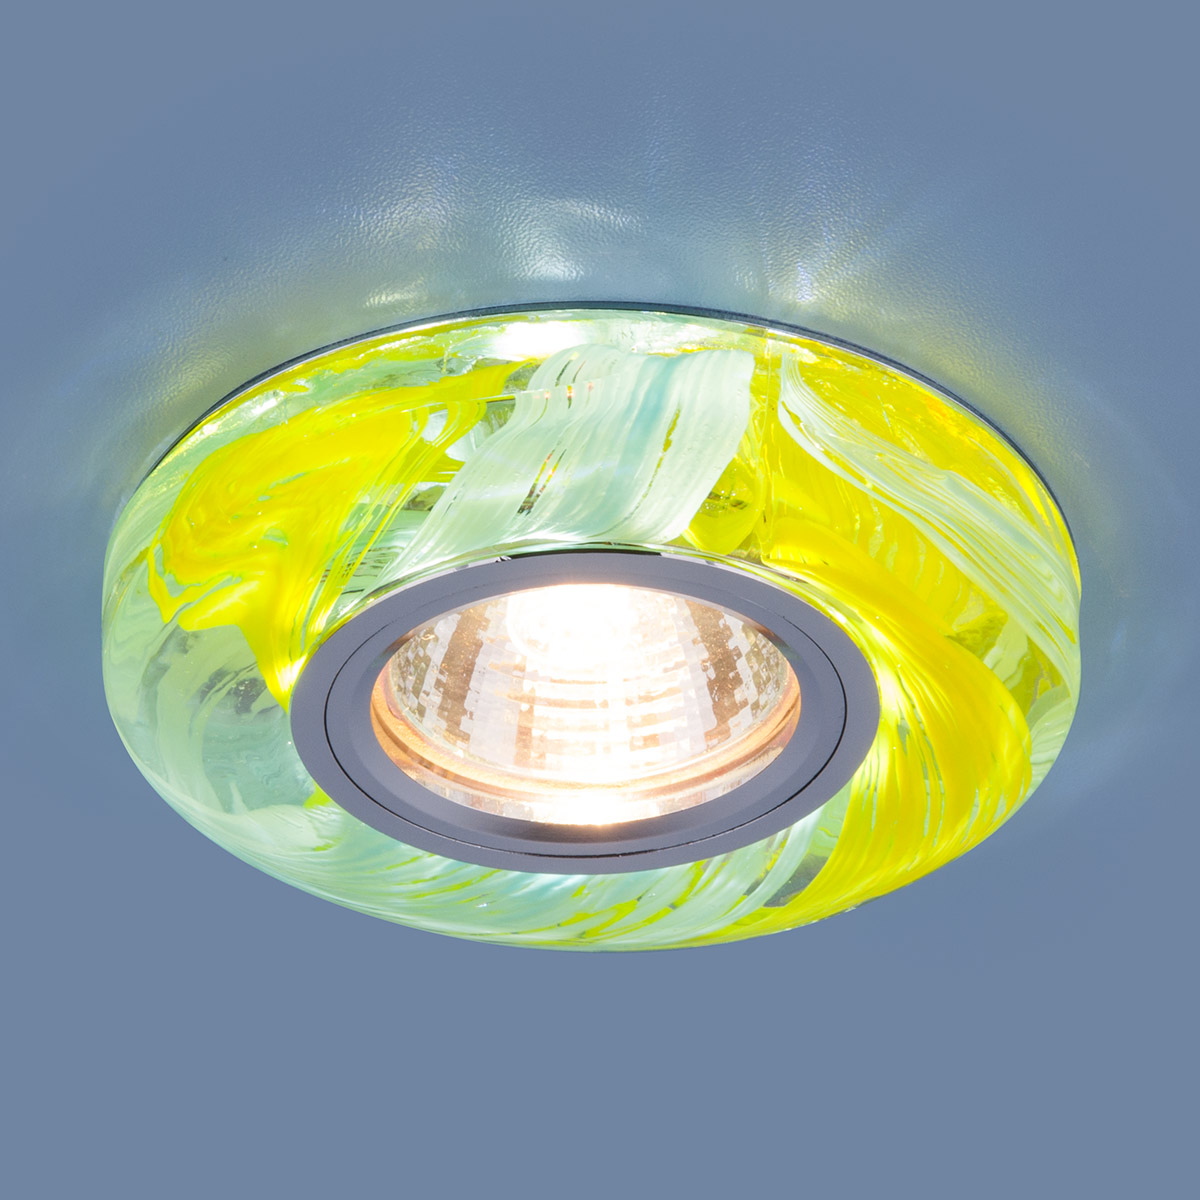 Точечный светодиодный светильник 2191 MR16 YL/BL желтый/голубой